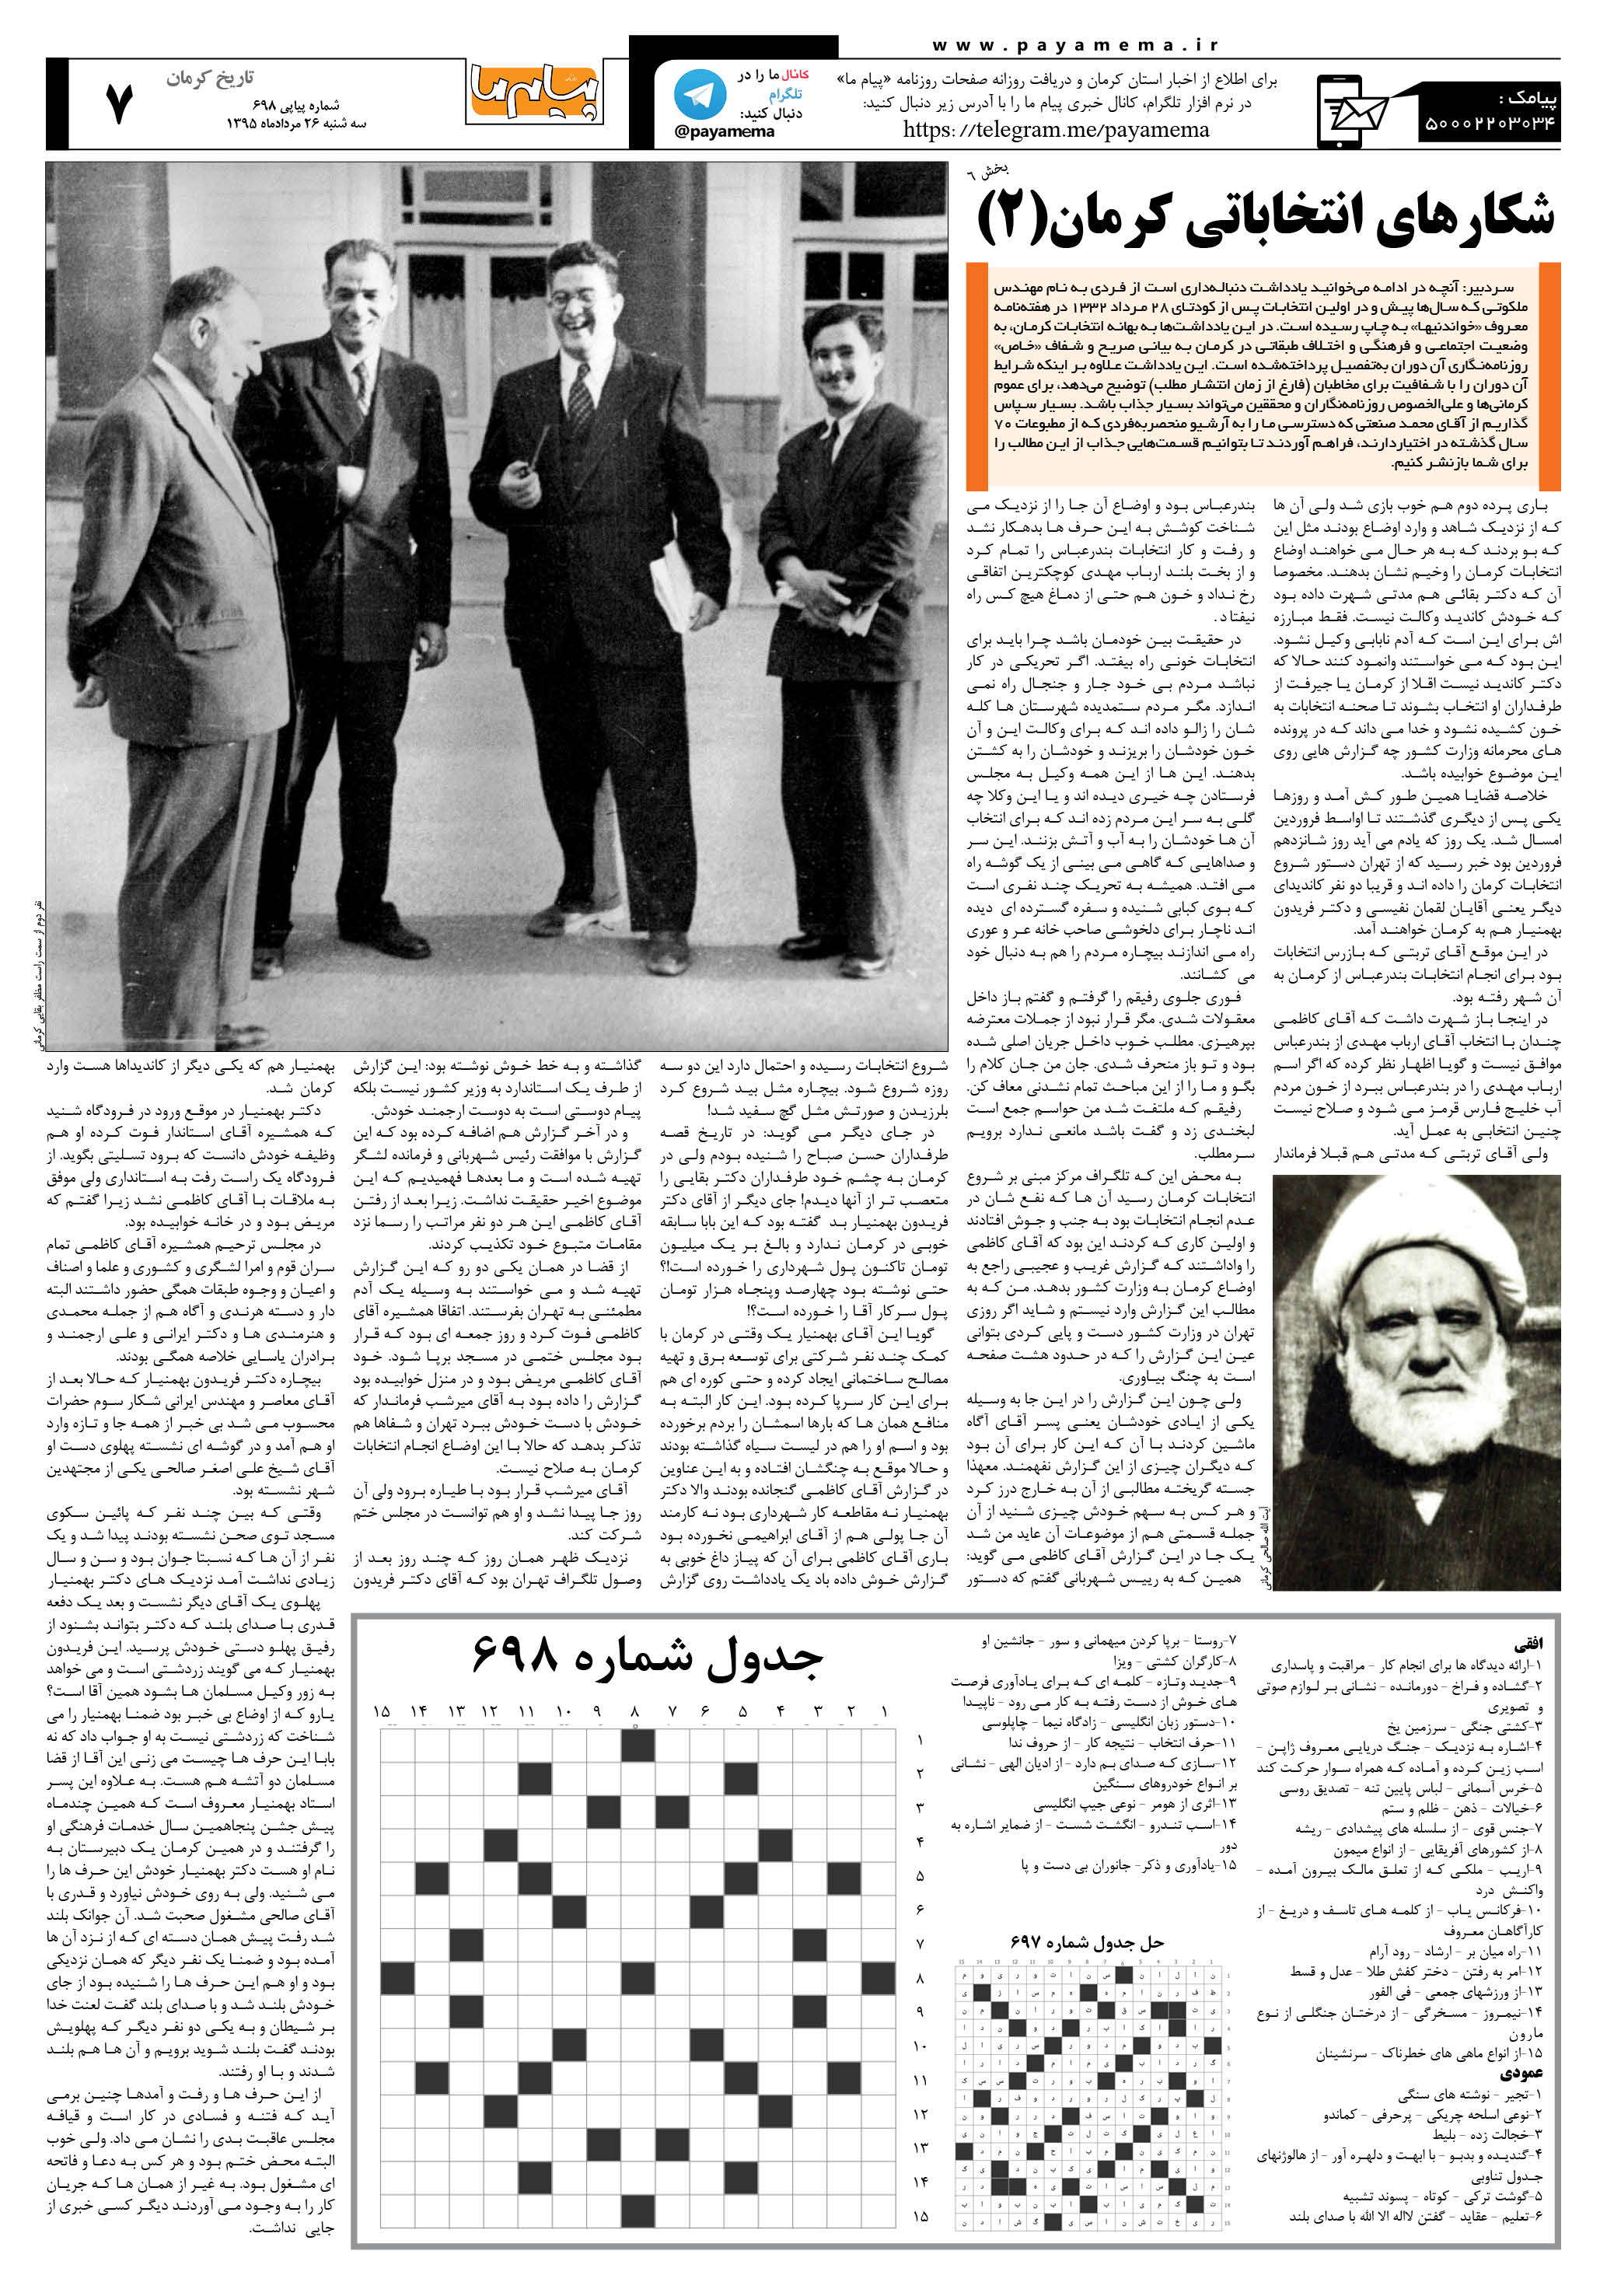 صفحه تاریخ کرمان شماره 698 روزنامه پیام ما